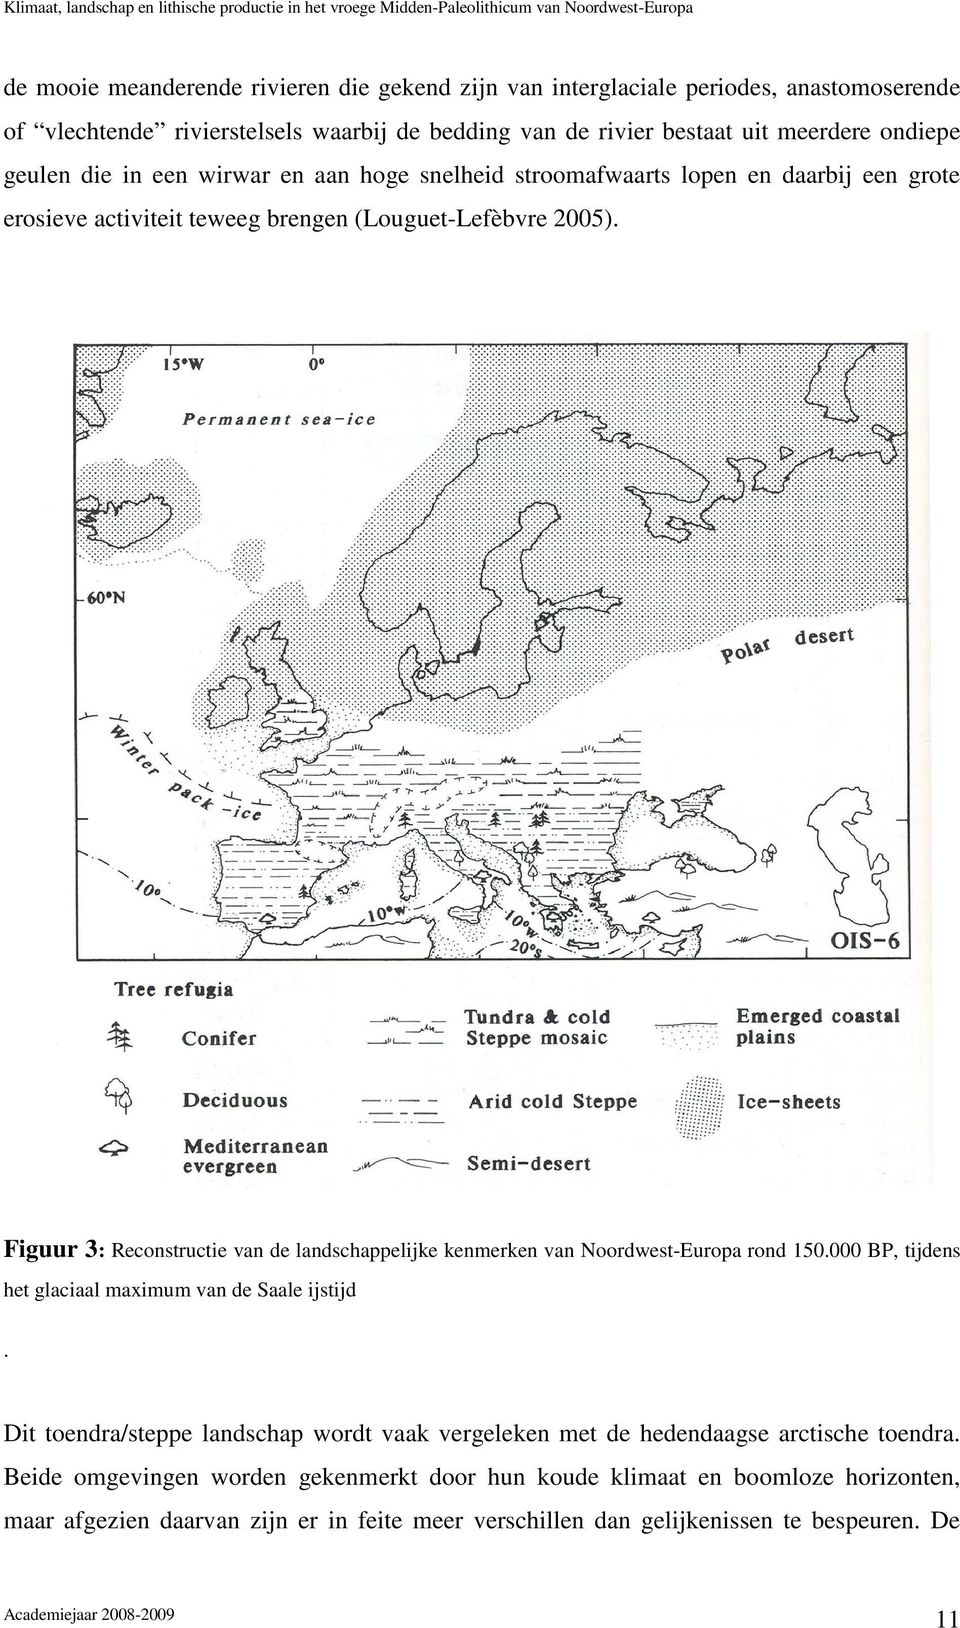 Figuur 3: Reconstructie van de landschappelijke kenmerken van Noordwest-Europa rond 150.000 BP, tijdens het glaciaal maximum van de Saale ijstijd.